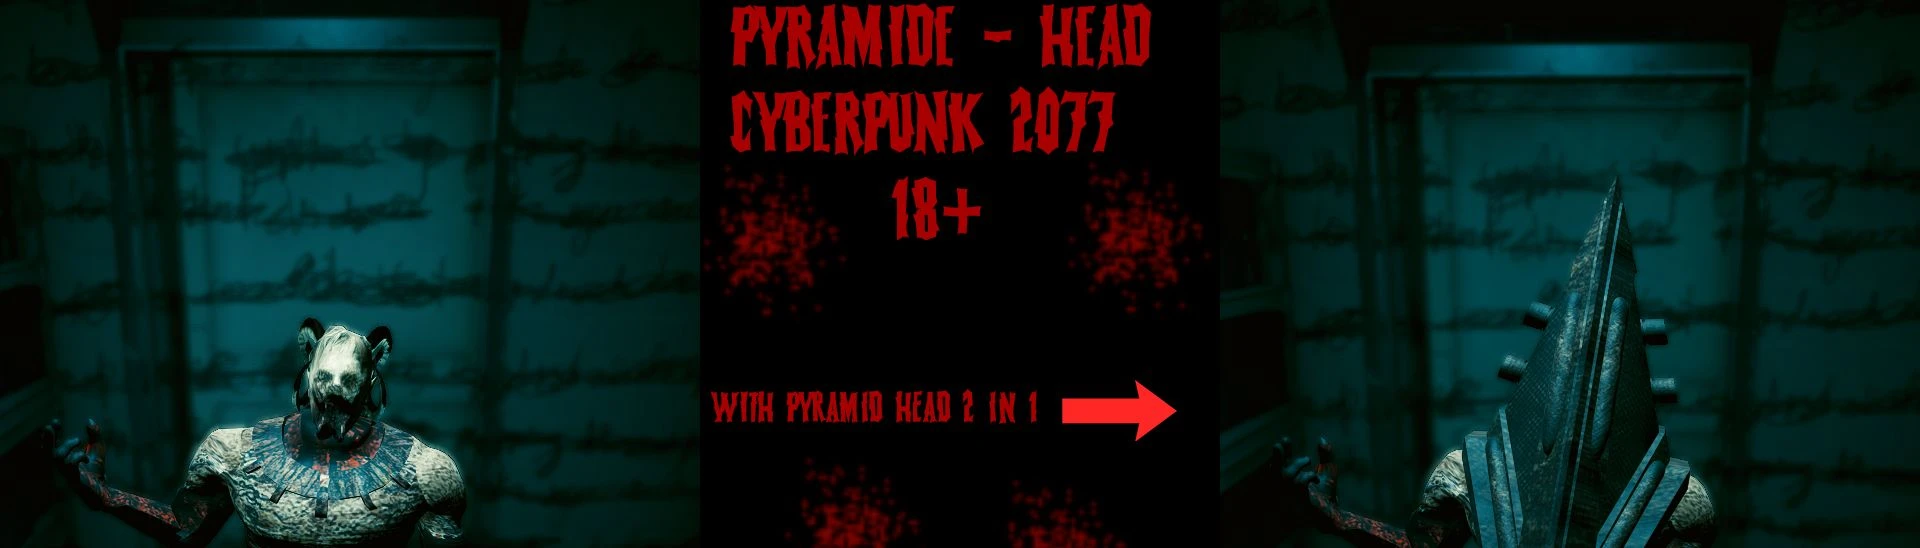 Swole Pyramid Head Overhaul WIP [Dead by Daylight] [Mods]